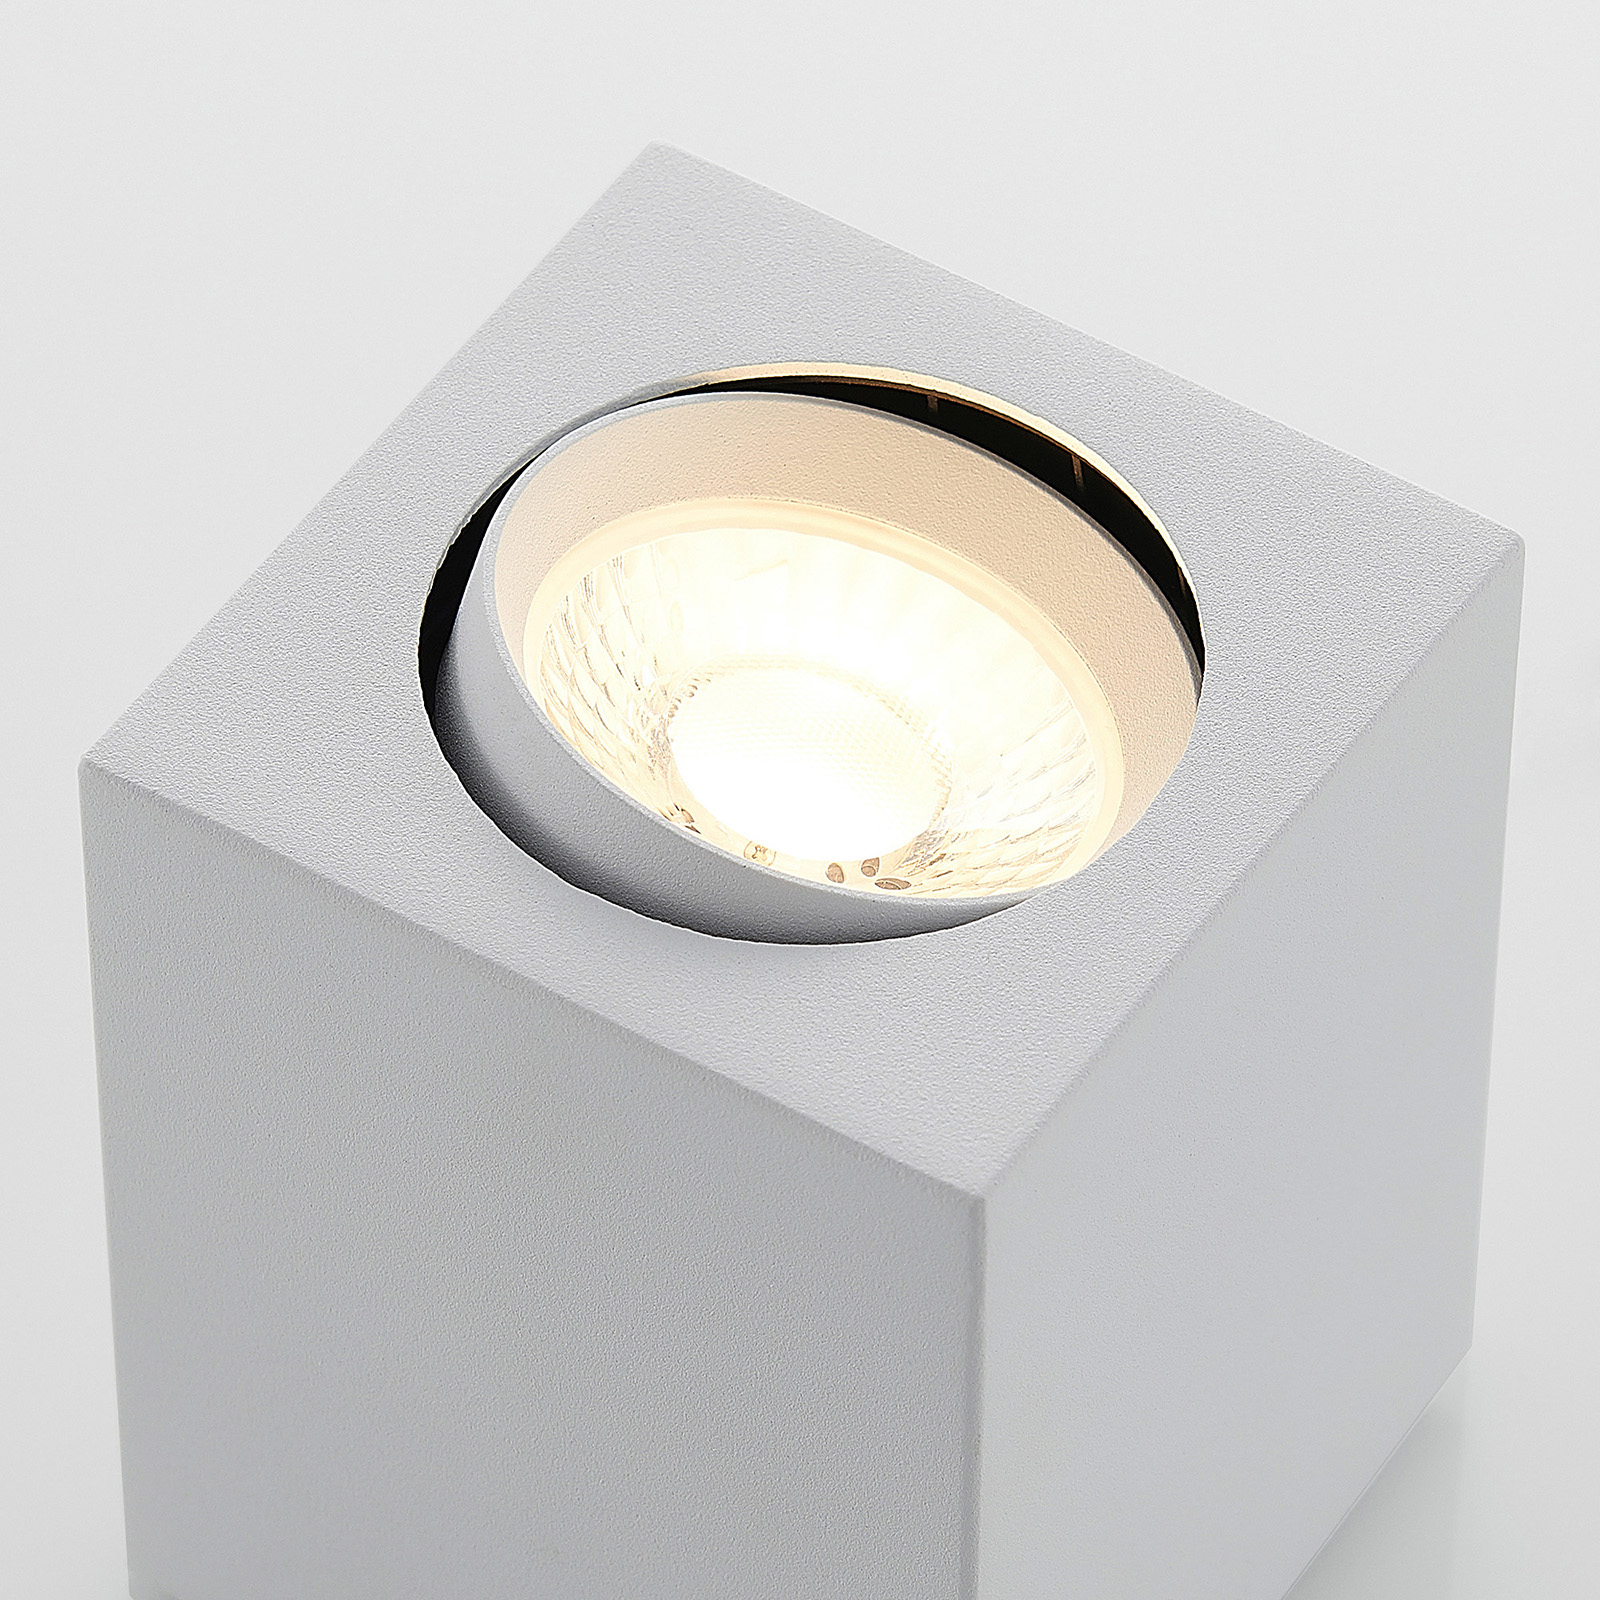 Arcchio Basir LED-kohdevalo, valkoinen, 8 W